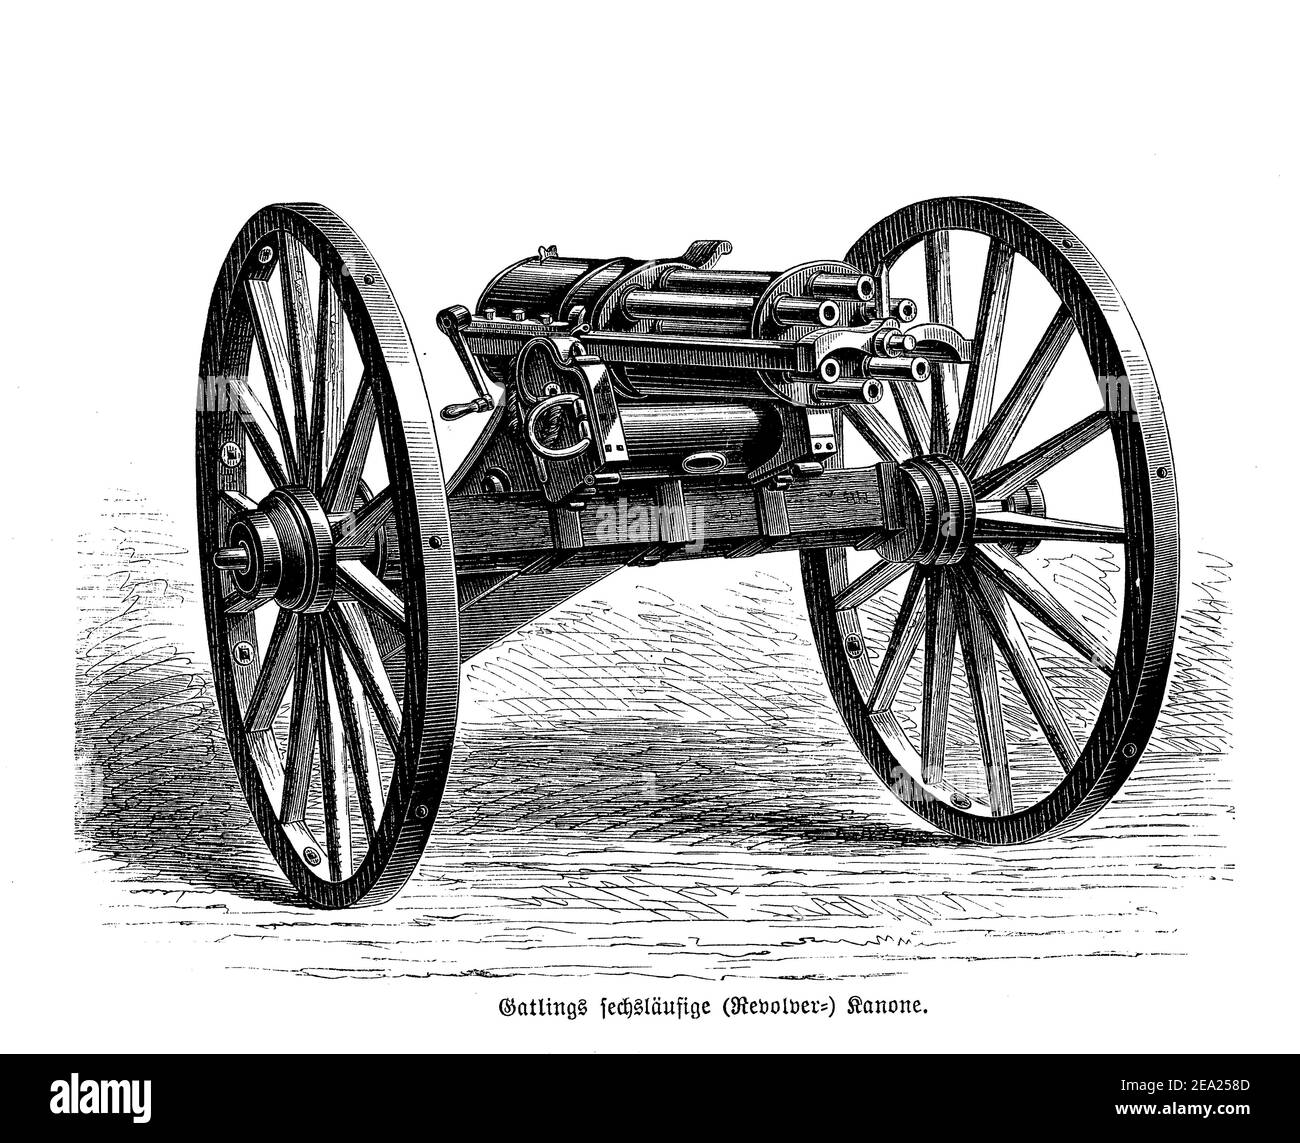 Gatling Schnellschuss Mehrfass-Maschinengewehr erfunden im Jahr 1861 von Richard Jordan Gatling, lädt jeder Lauf sequenziell eine einzelne Runde Patrone und feuert den Schuss als Revolver Kanone Stockfoto